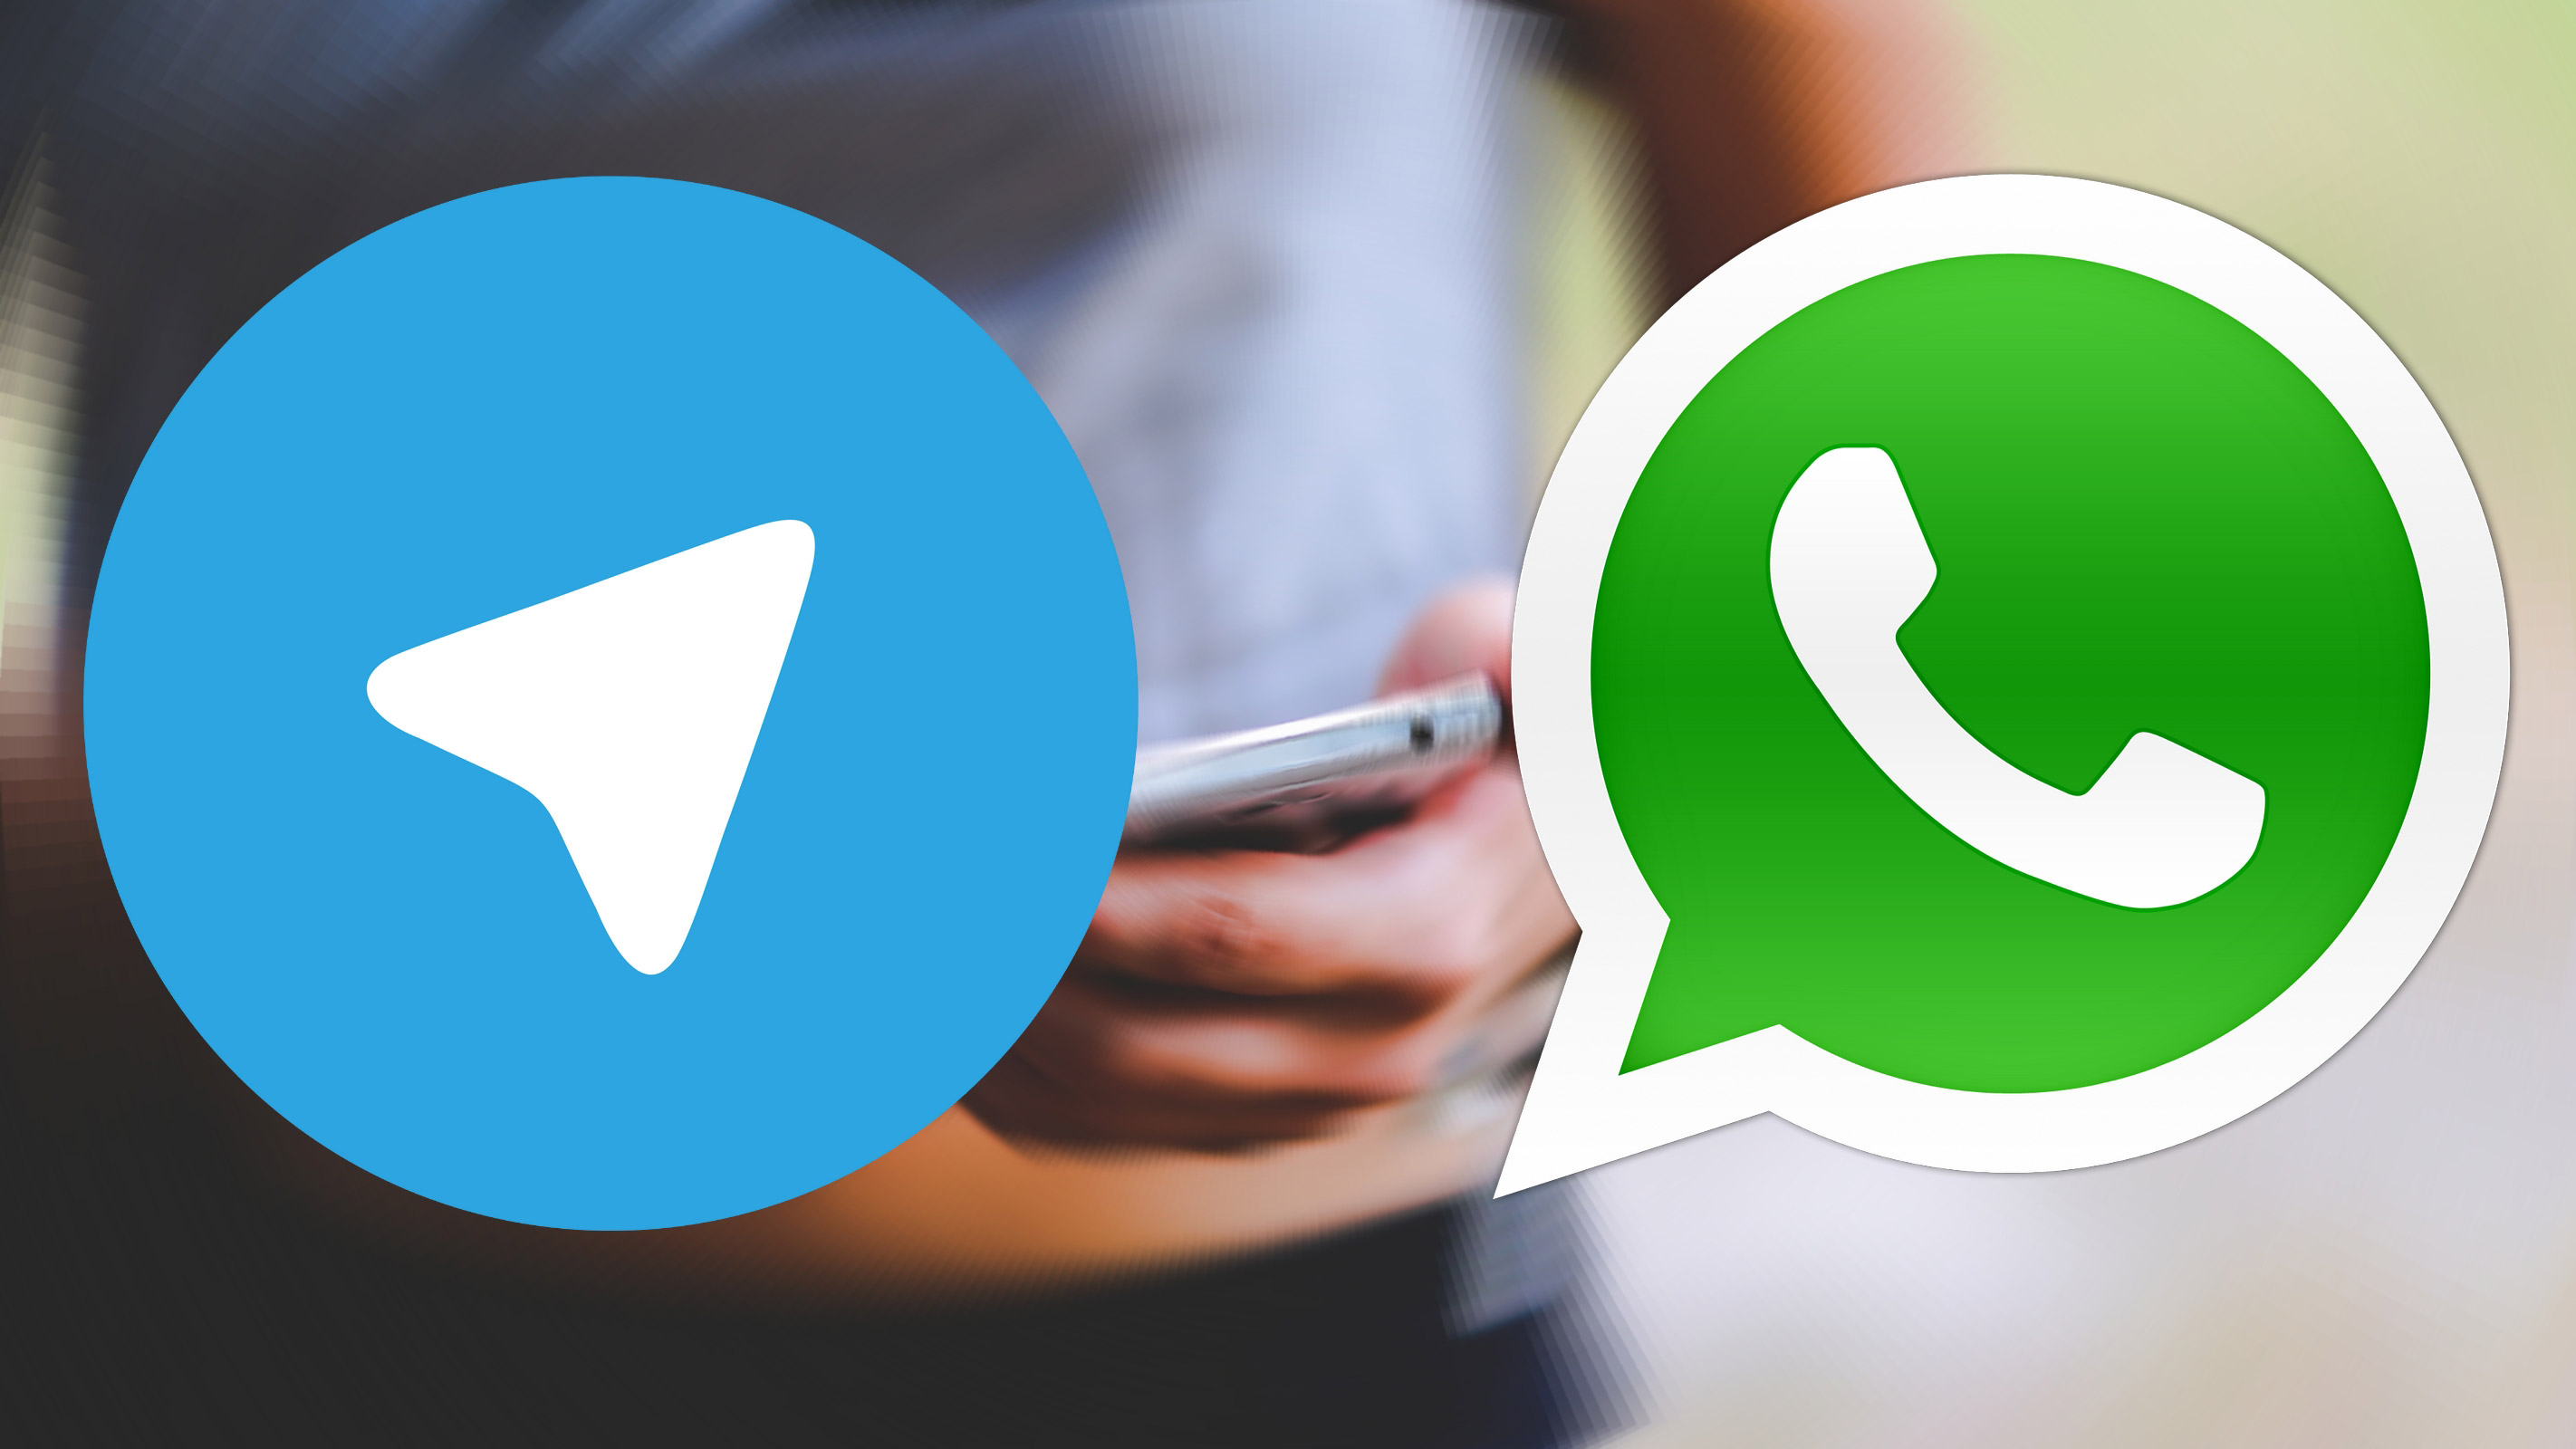 فرق بين تلگرام و واتس آپ